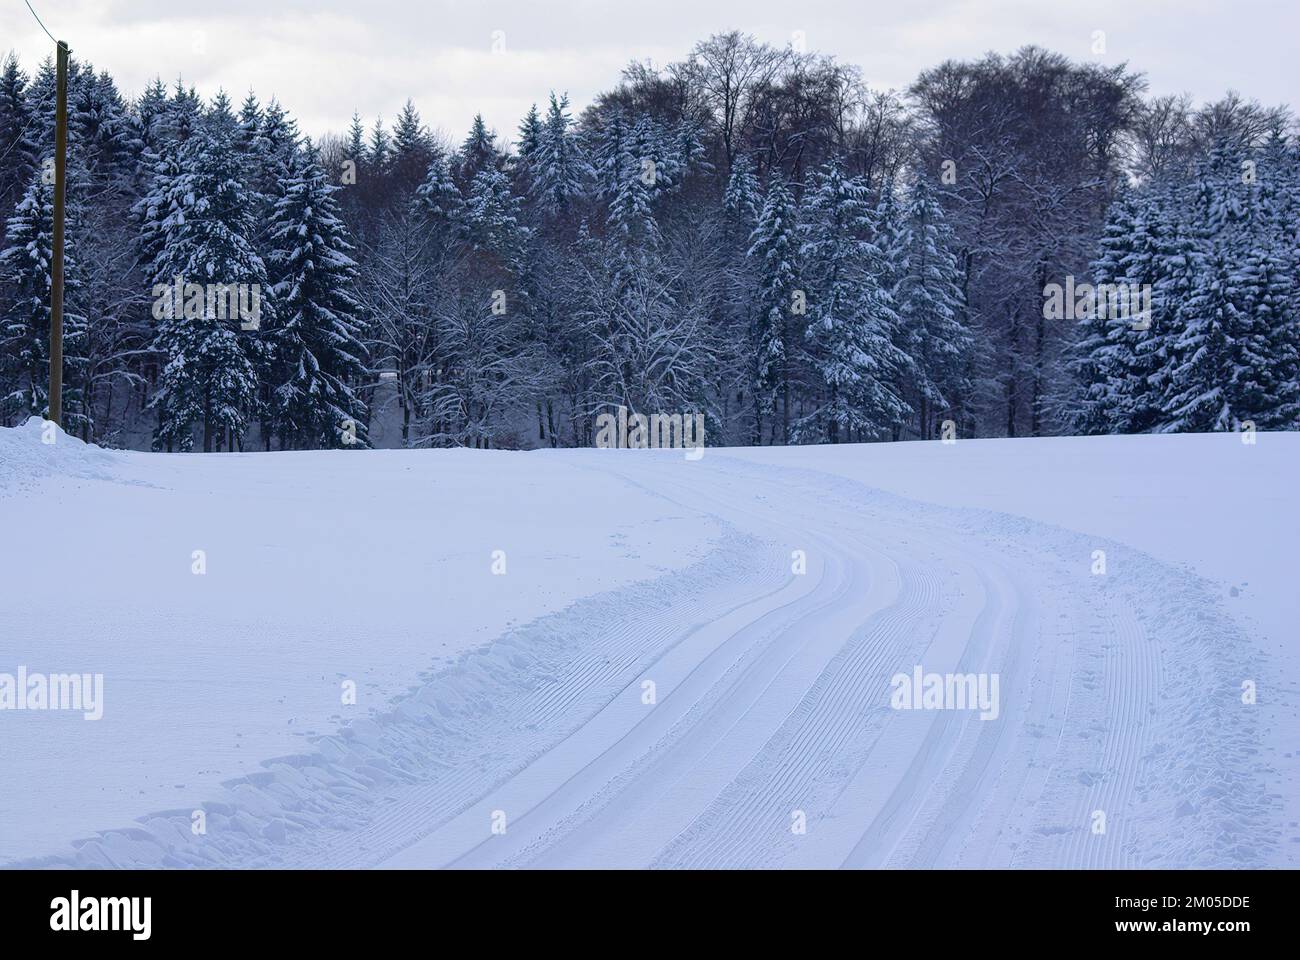 Paesaggio invernale profondamente innevato, con una pista da fondo appena tracciata che corre verso la foresta sullo sfondo. Foto Stock